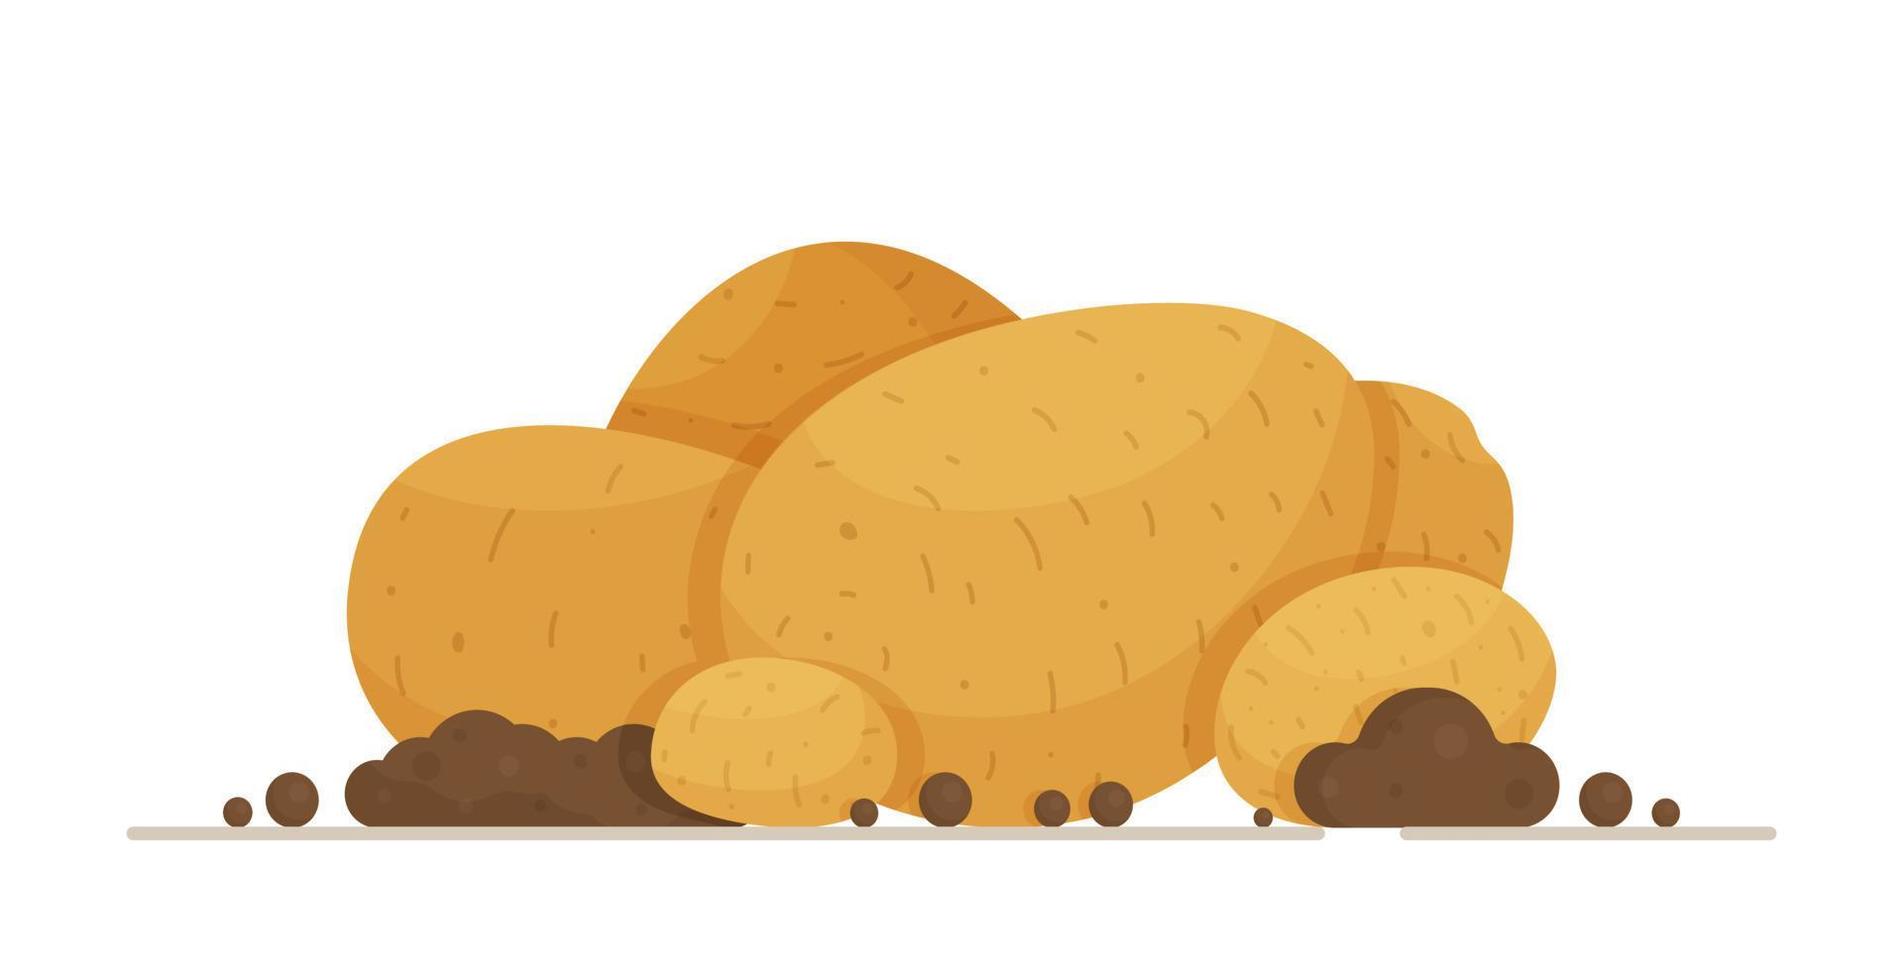 uma bandeira de batatas grandes e sujas. ilustração em vetor de um vegetal. tubérculos de batata leve de diferentes formas e tamanhos.